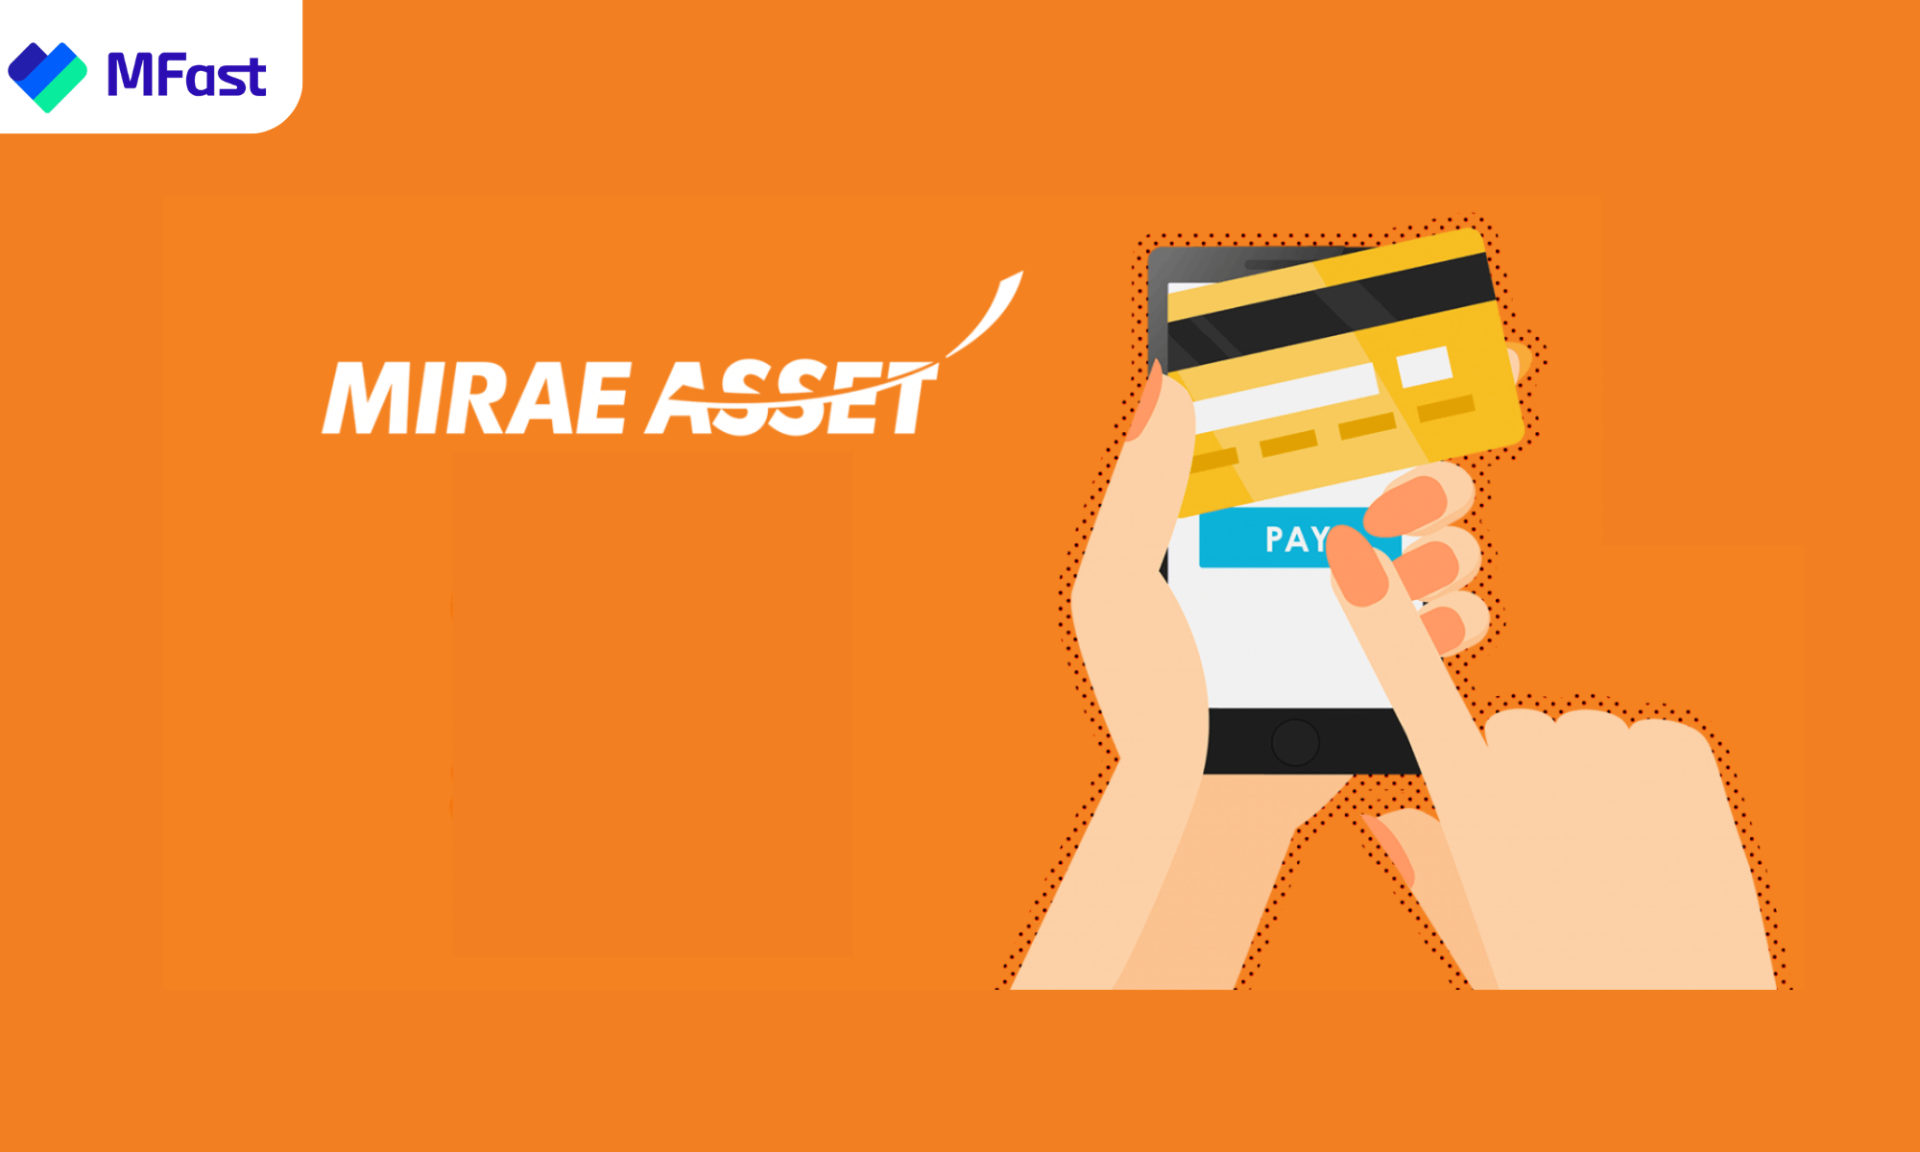 Chiến dịch tiếp thị liên kết của MIRAE ASSET trên app MFast